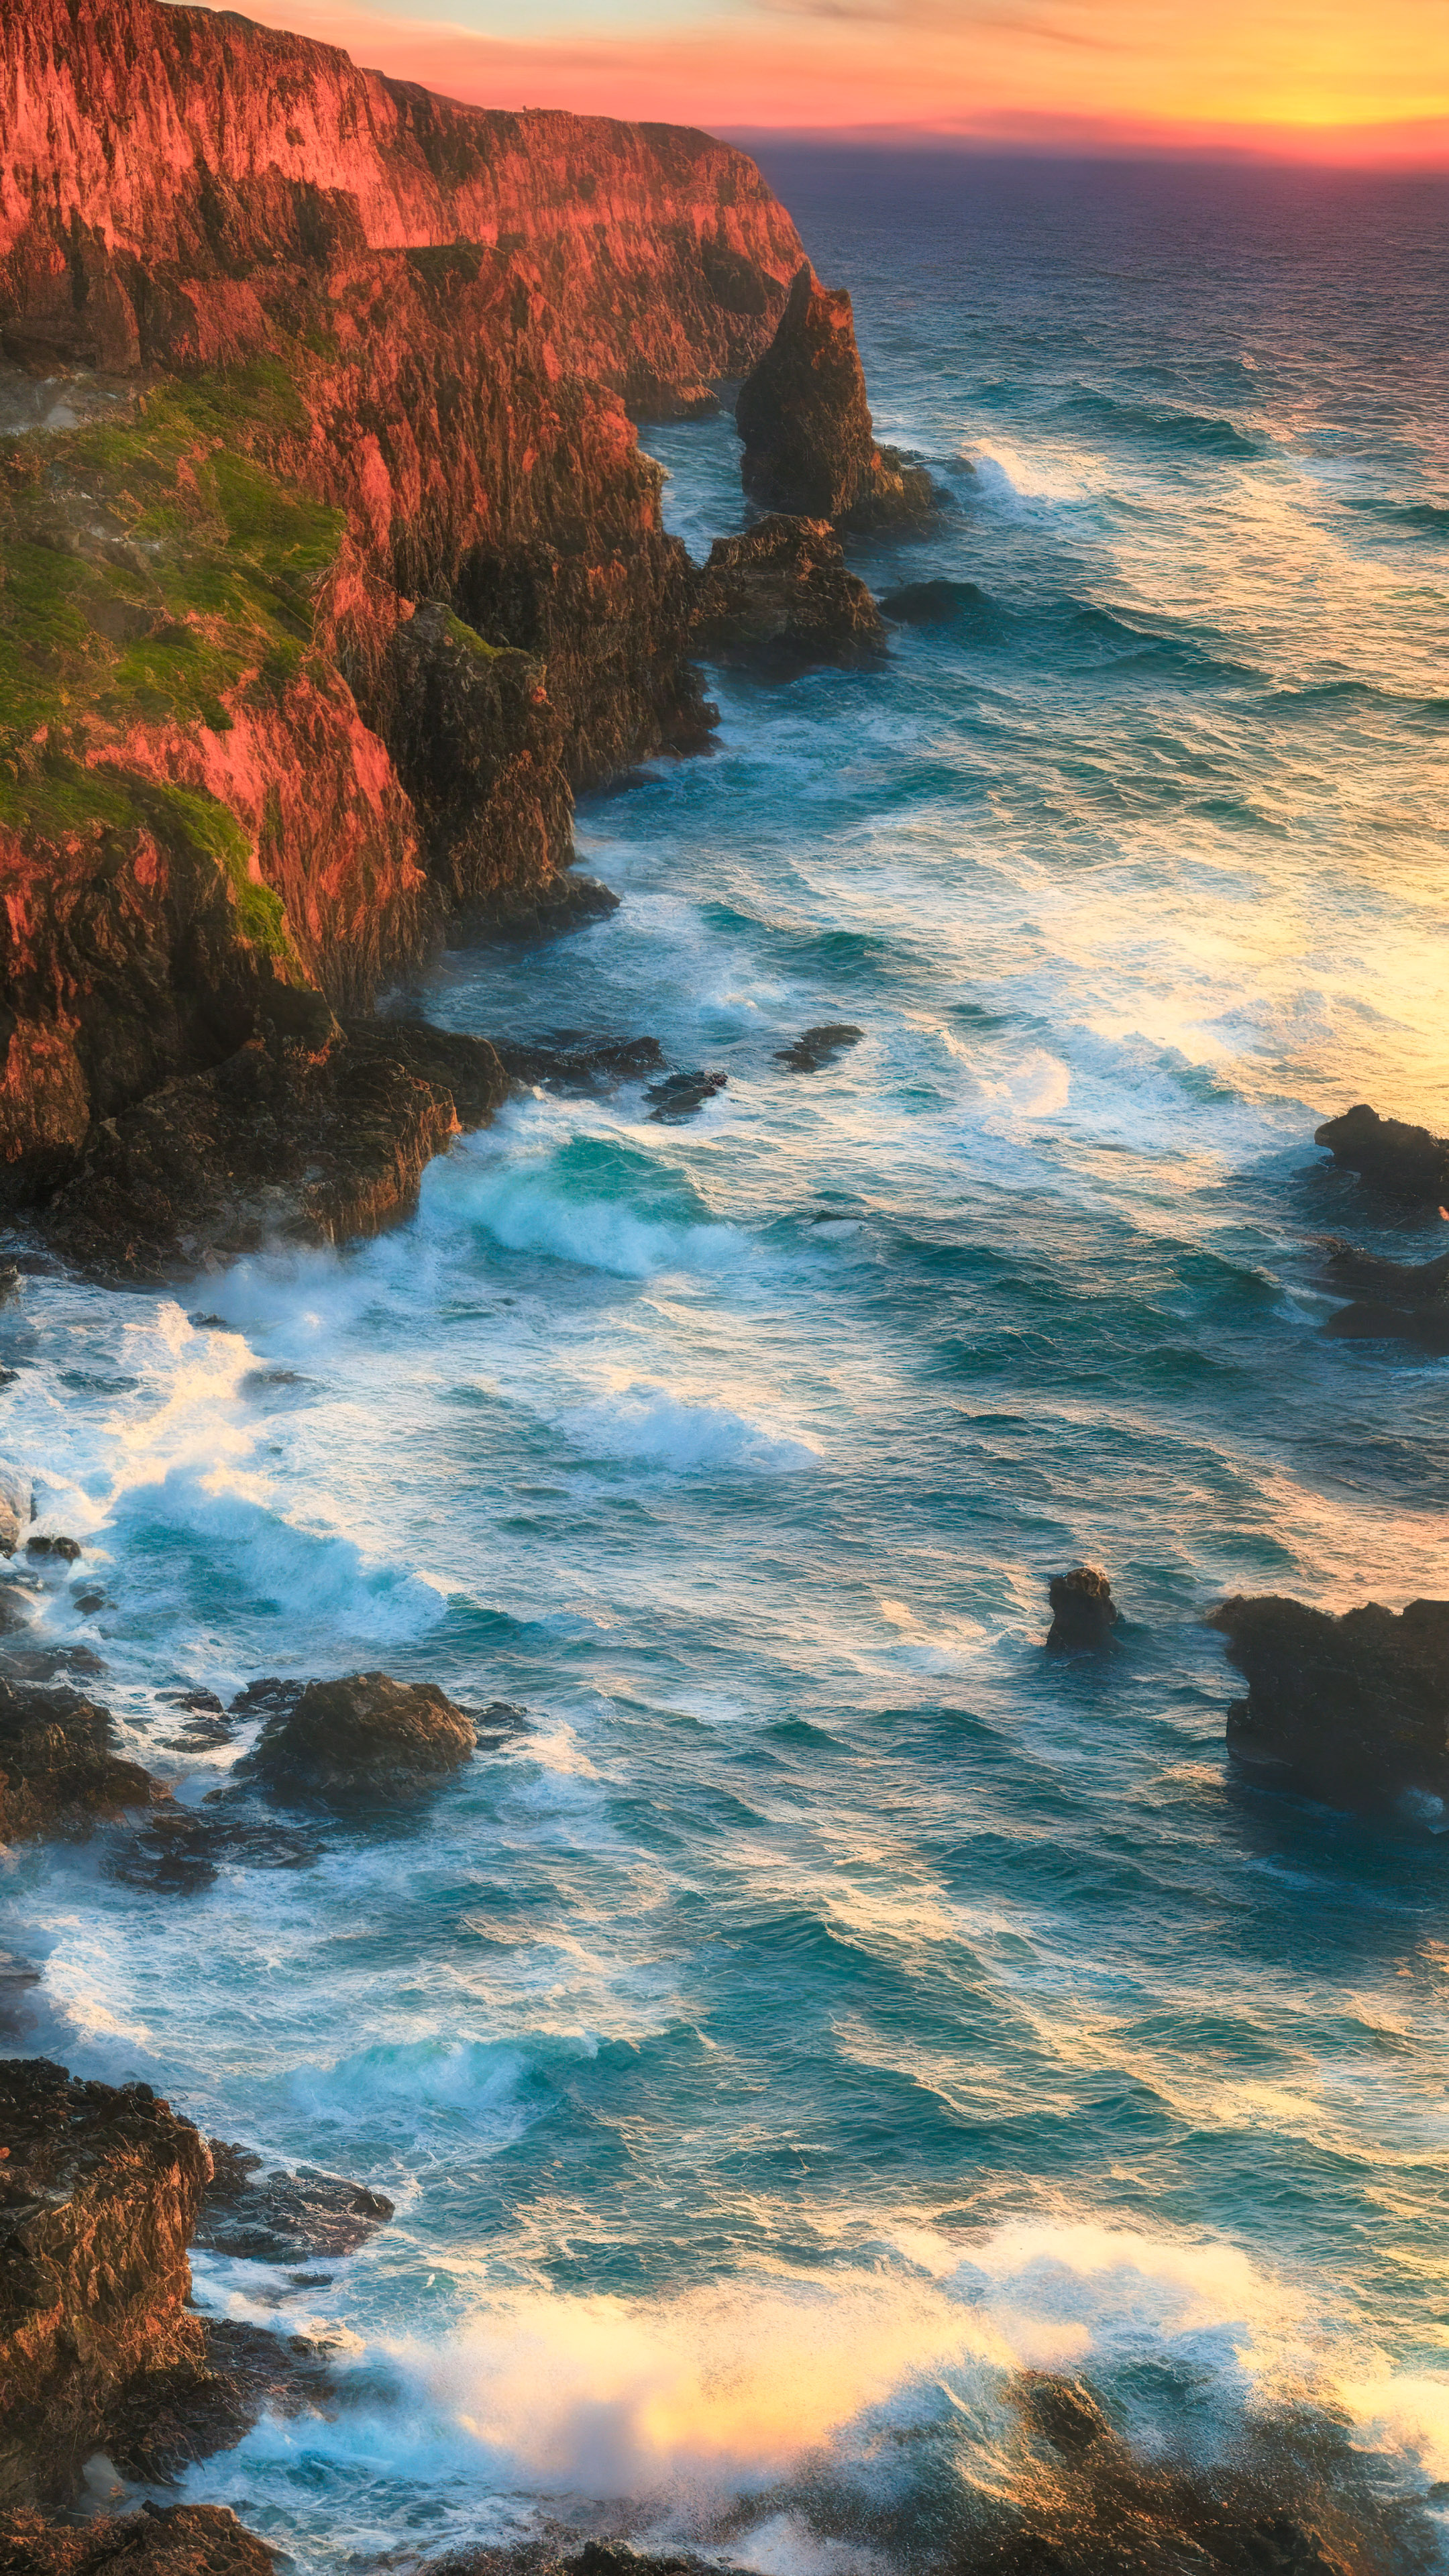 Une vue côtière époustouflante se déroule dans notre beau paysage en 4K, où des falaises rugueuses rencontrent des vagues déferlantes sous un coucher de soleil enflammé.